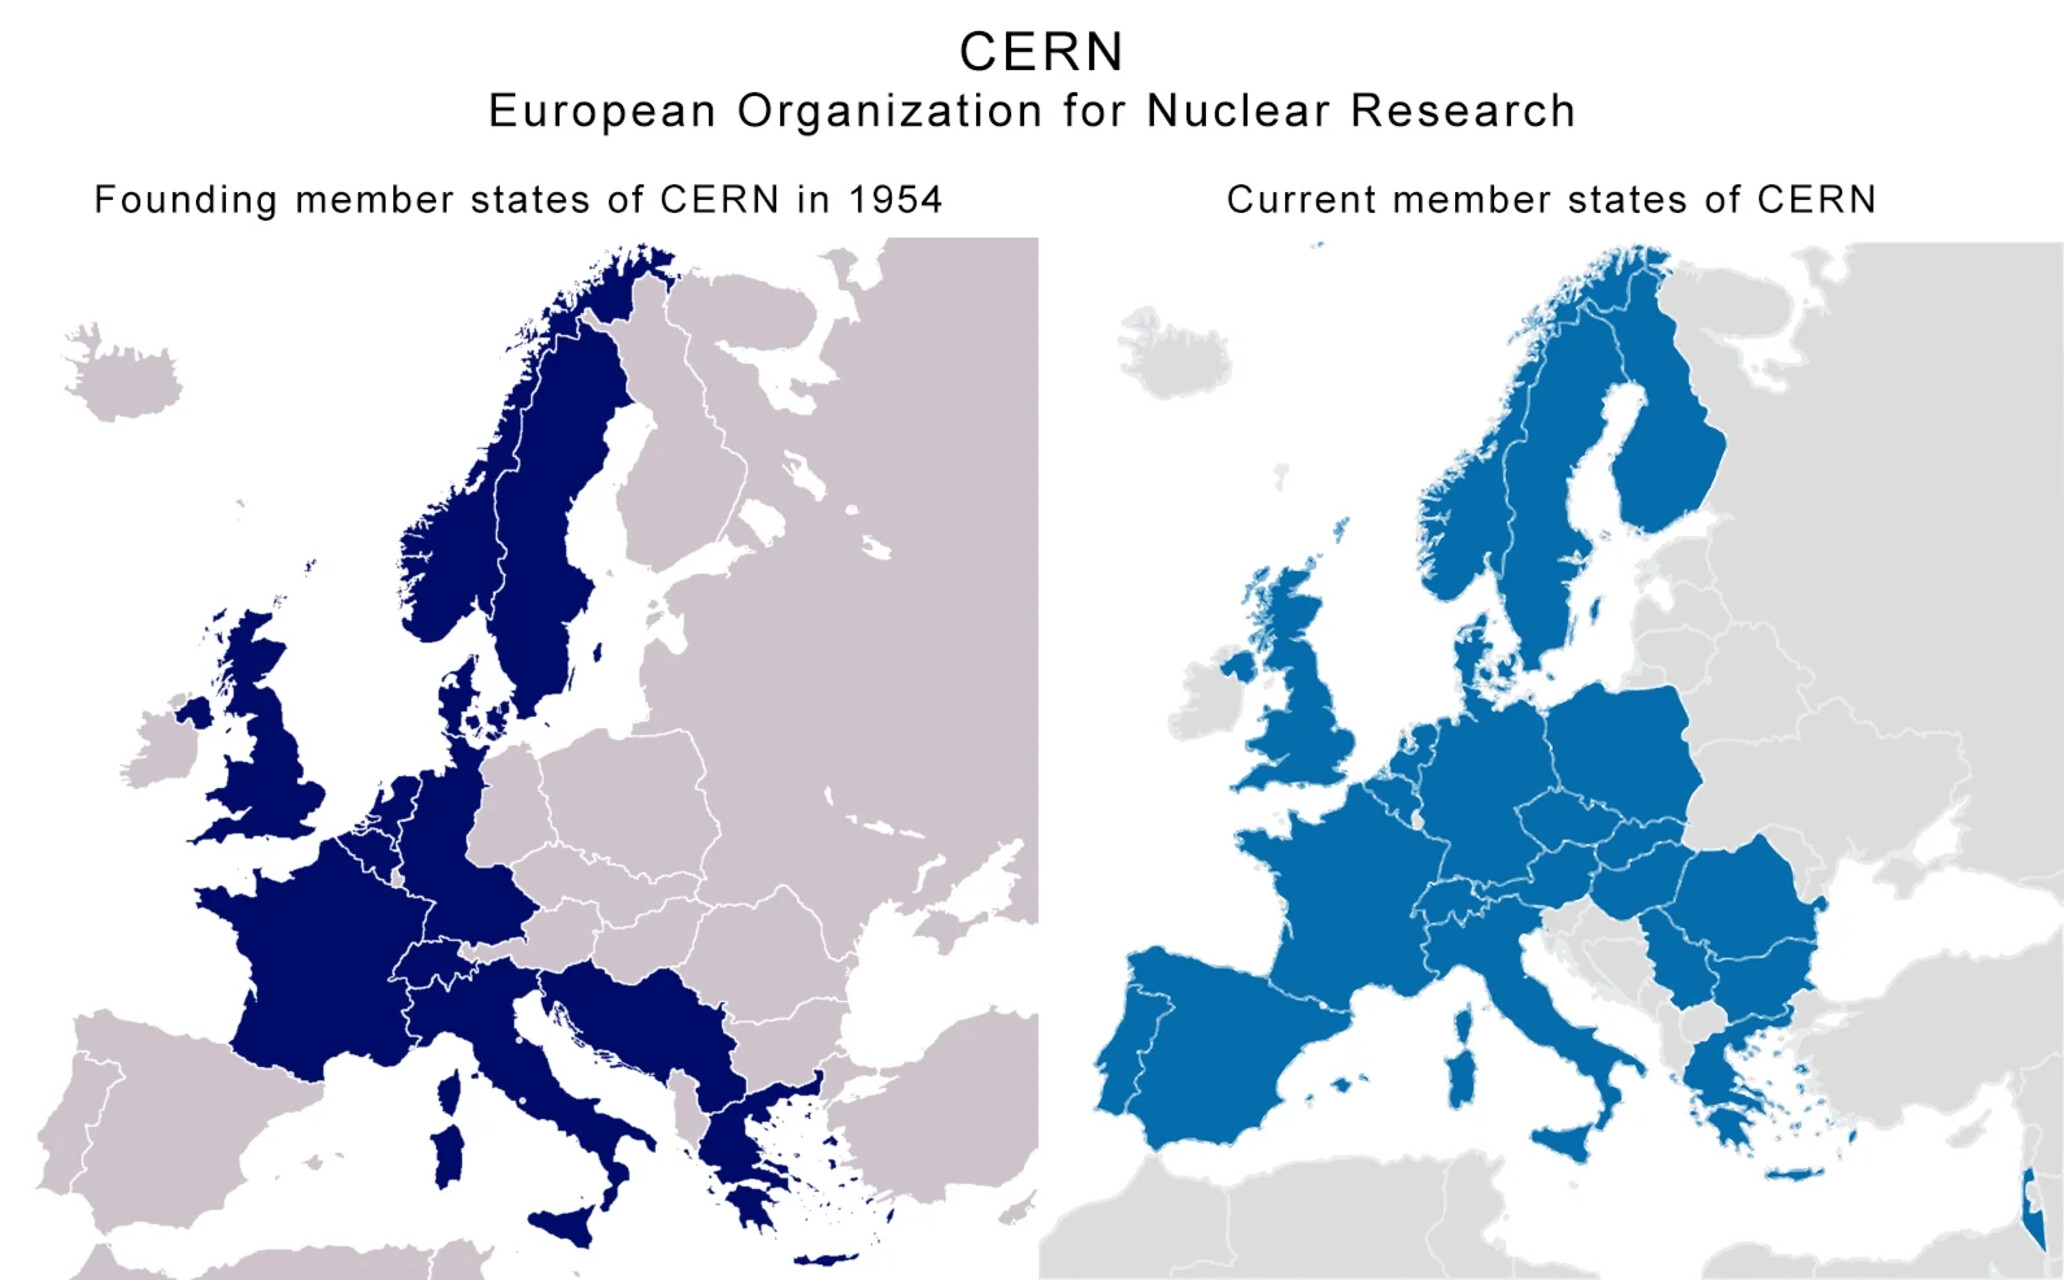 Brasile: due mappe con il confronto fra i Paesi fondatori e gli attuali Stati membri del CERN